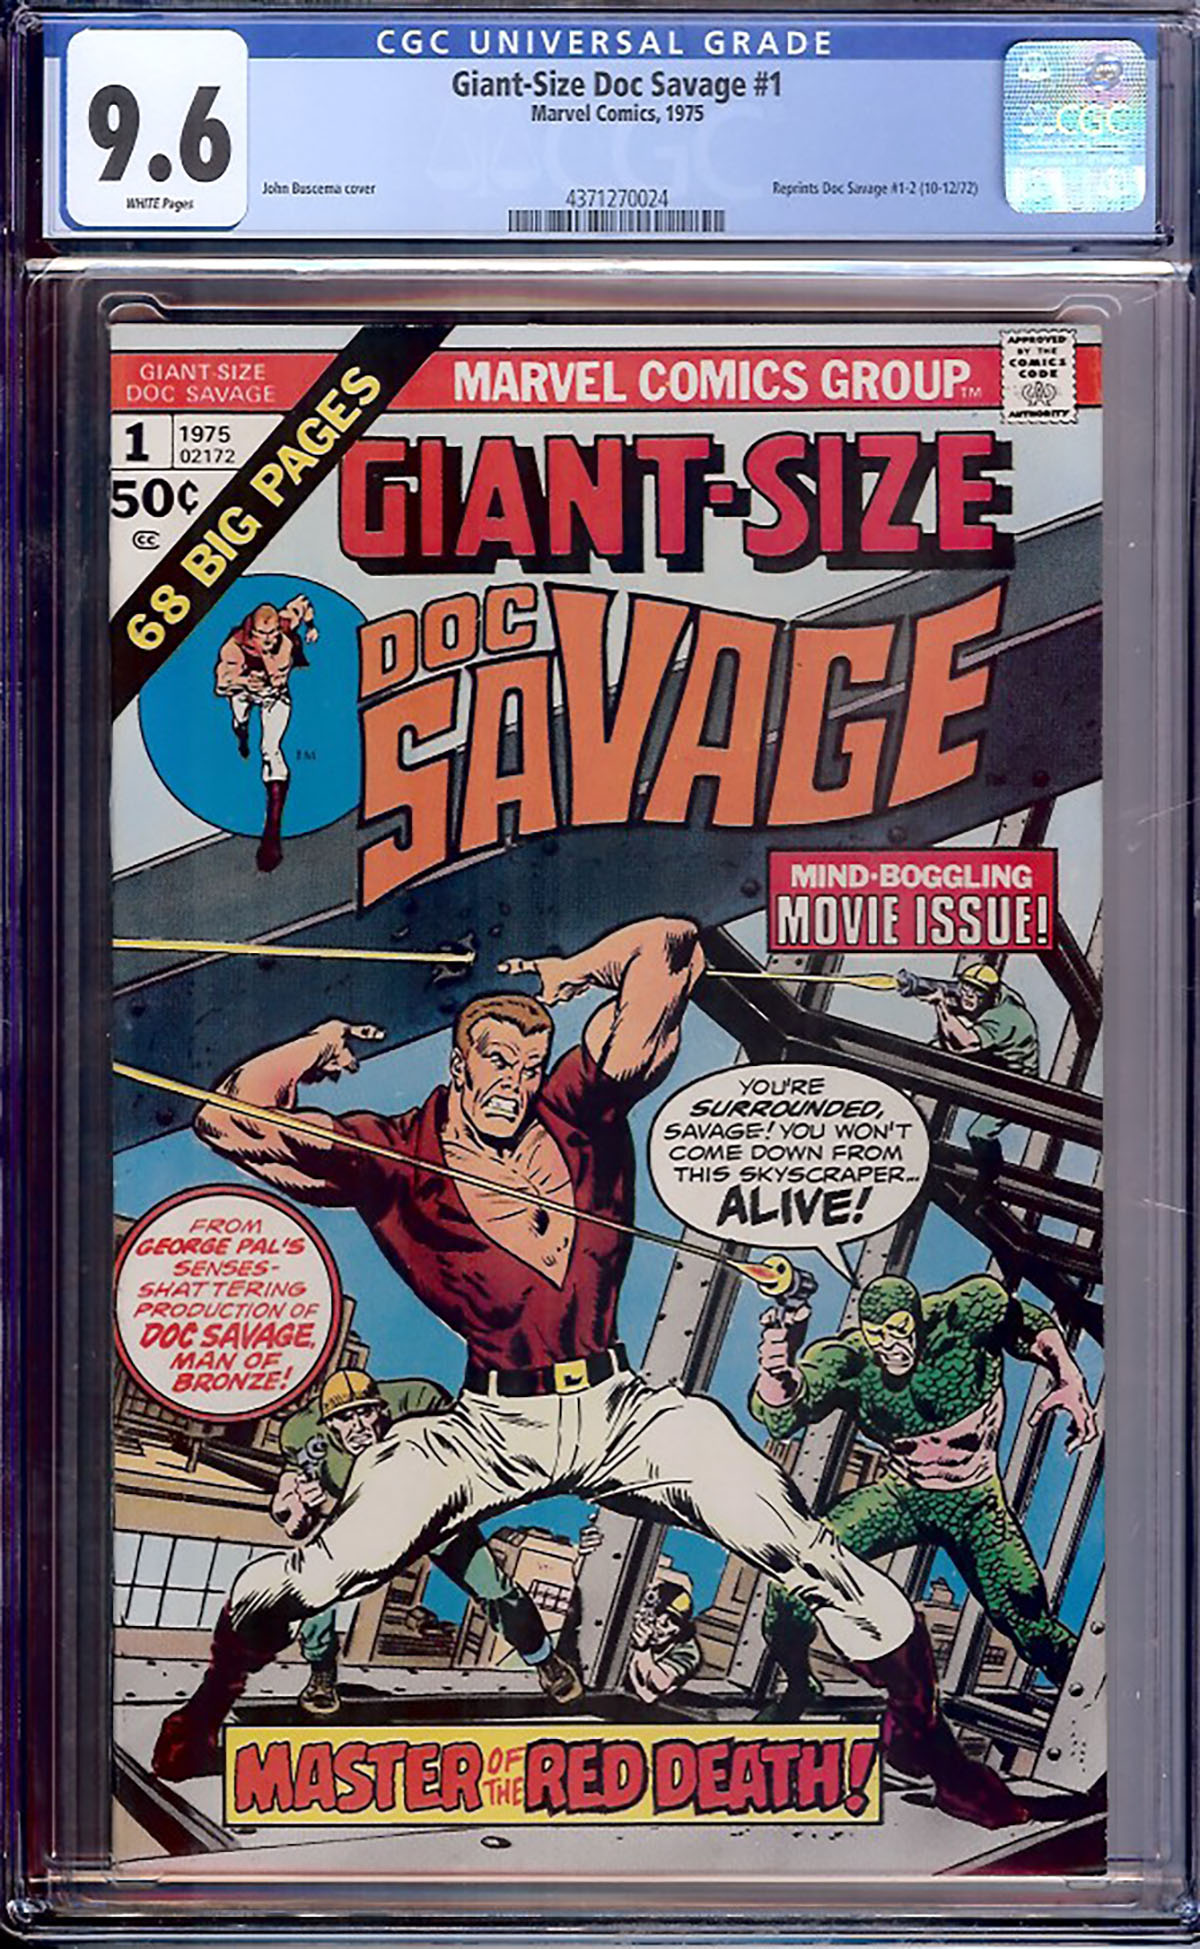 Giant-Size Doc Savage #1 CGC 9.6 w